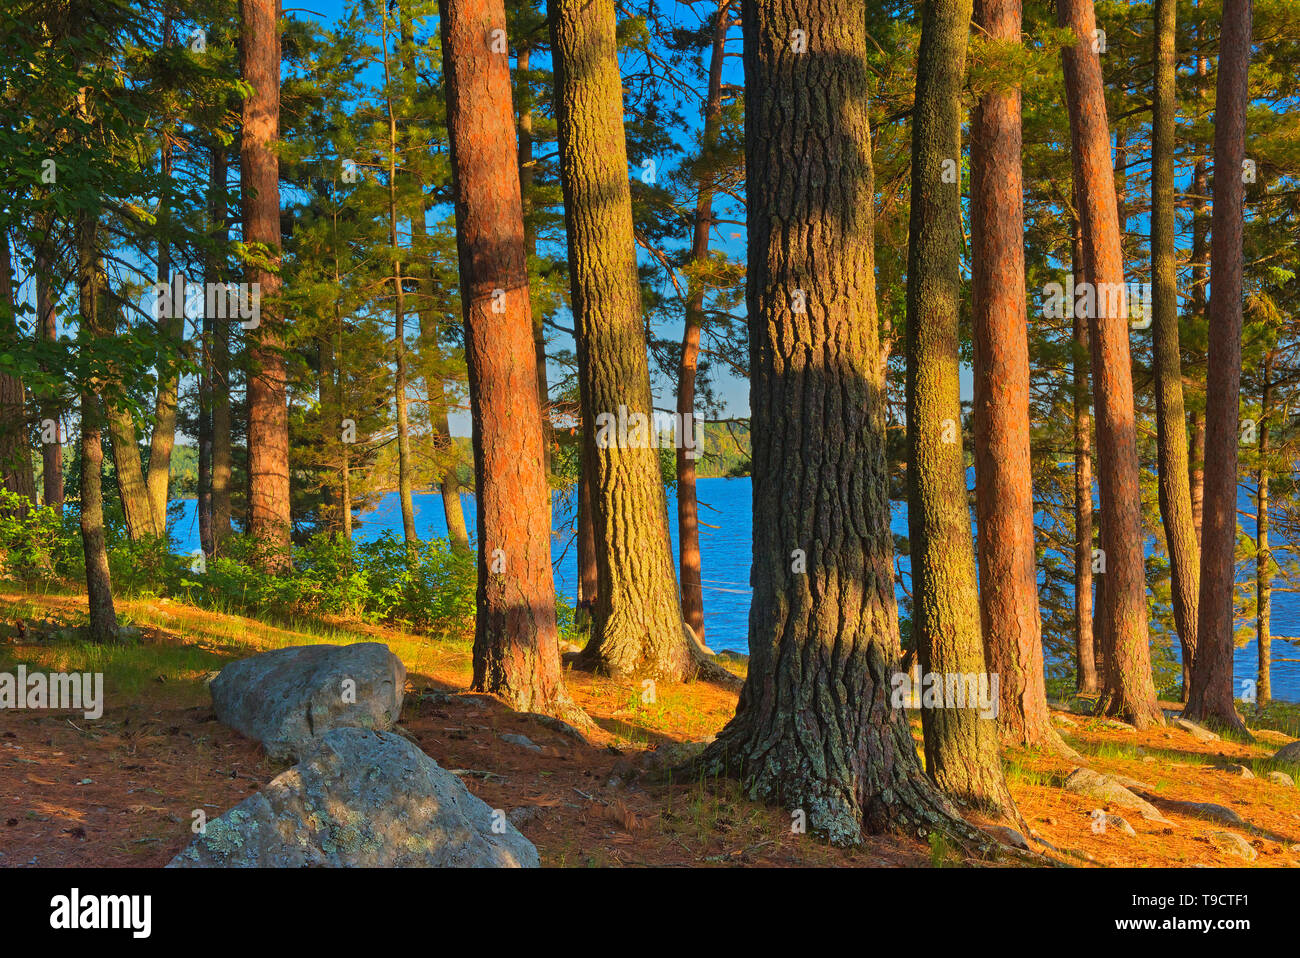 Mature white pine (Pinus strobi) and red pine (Pinus resinosa) at sunset, Ontario, Canada Stock Photo